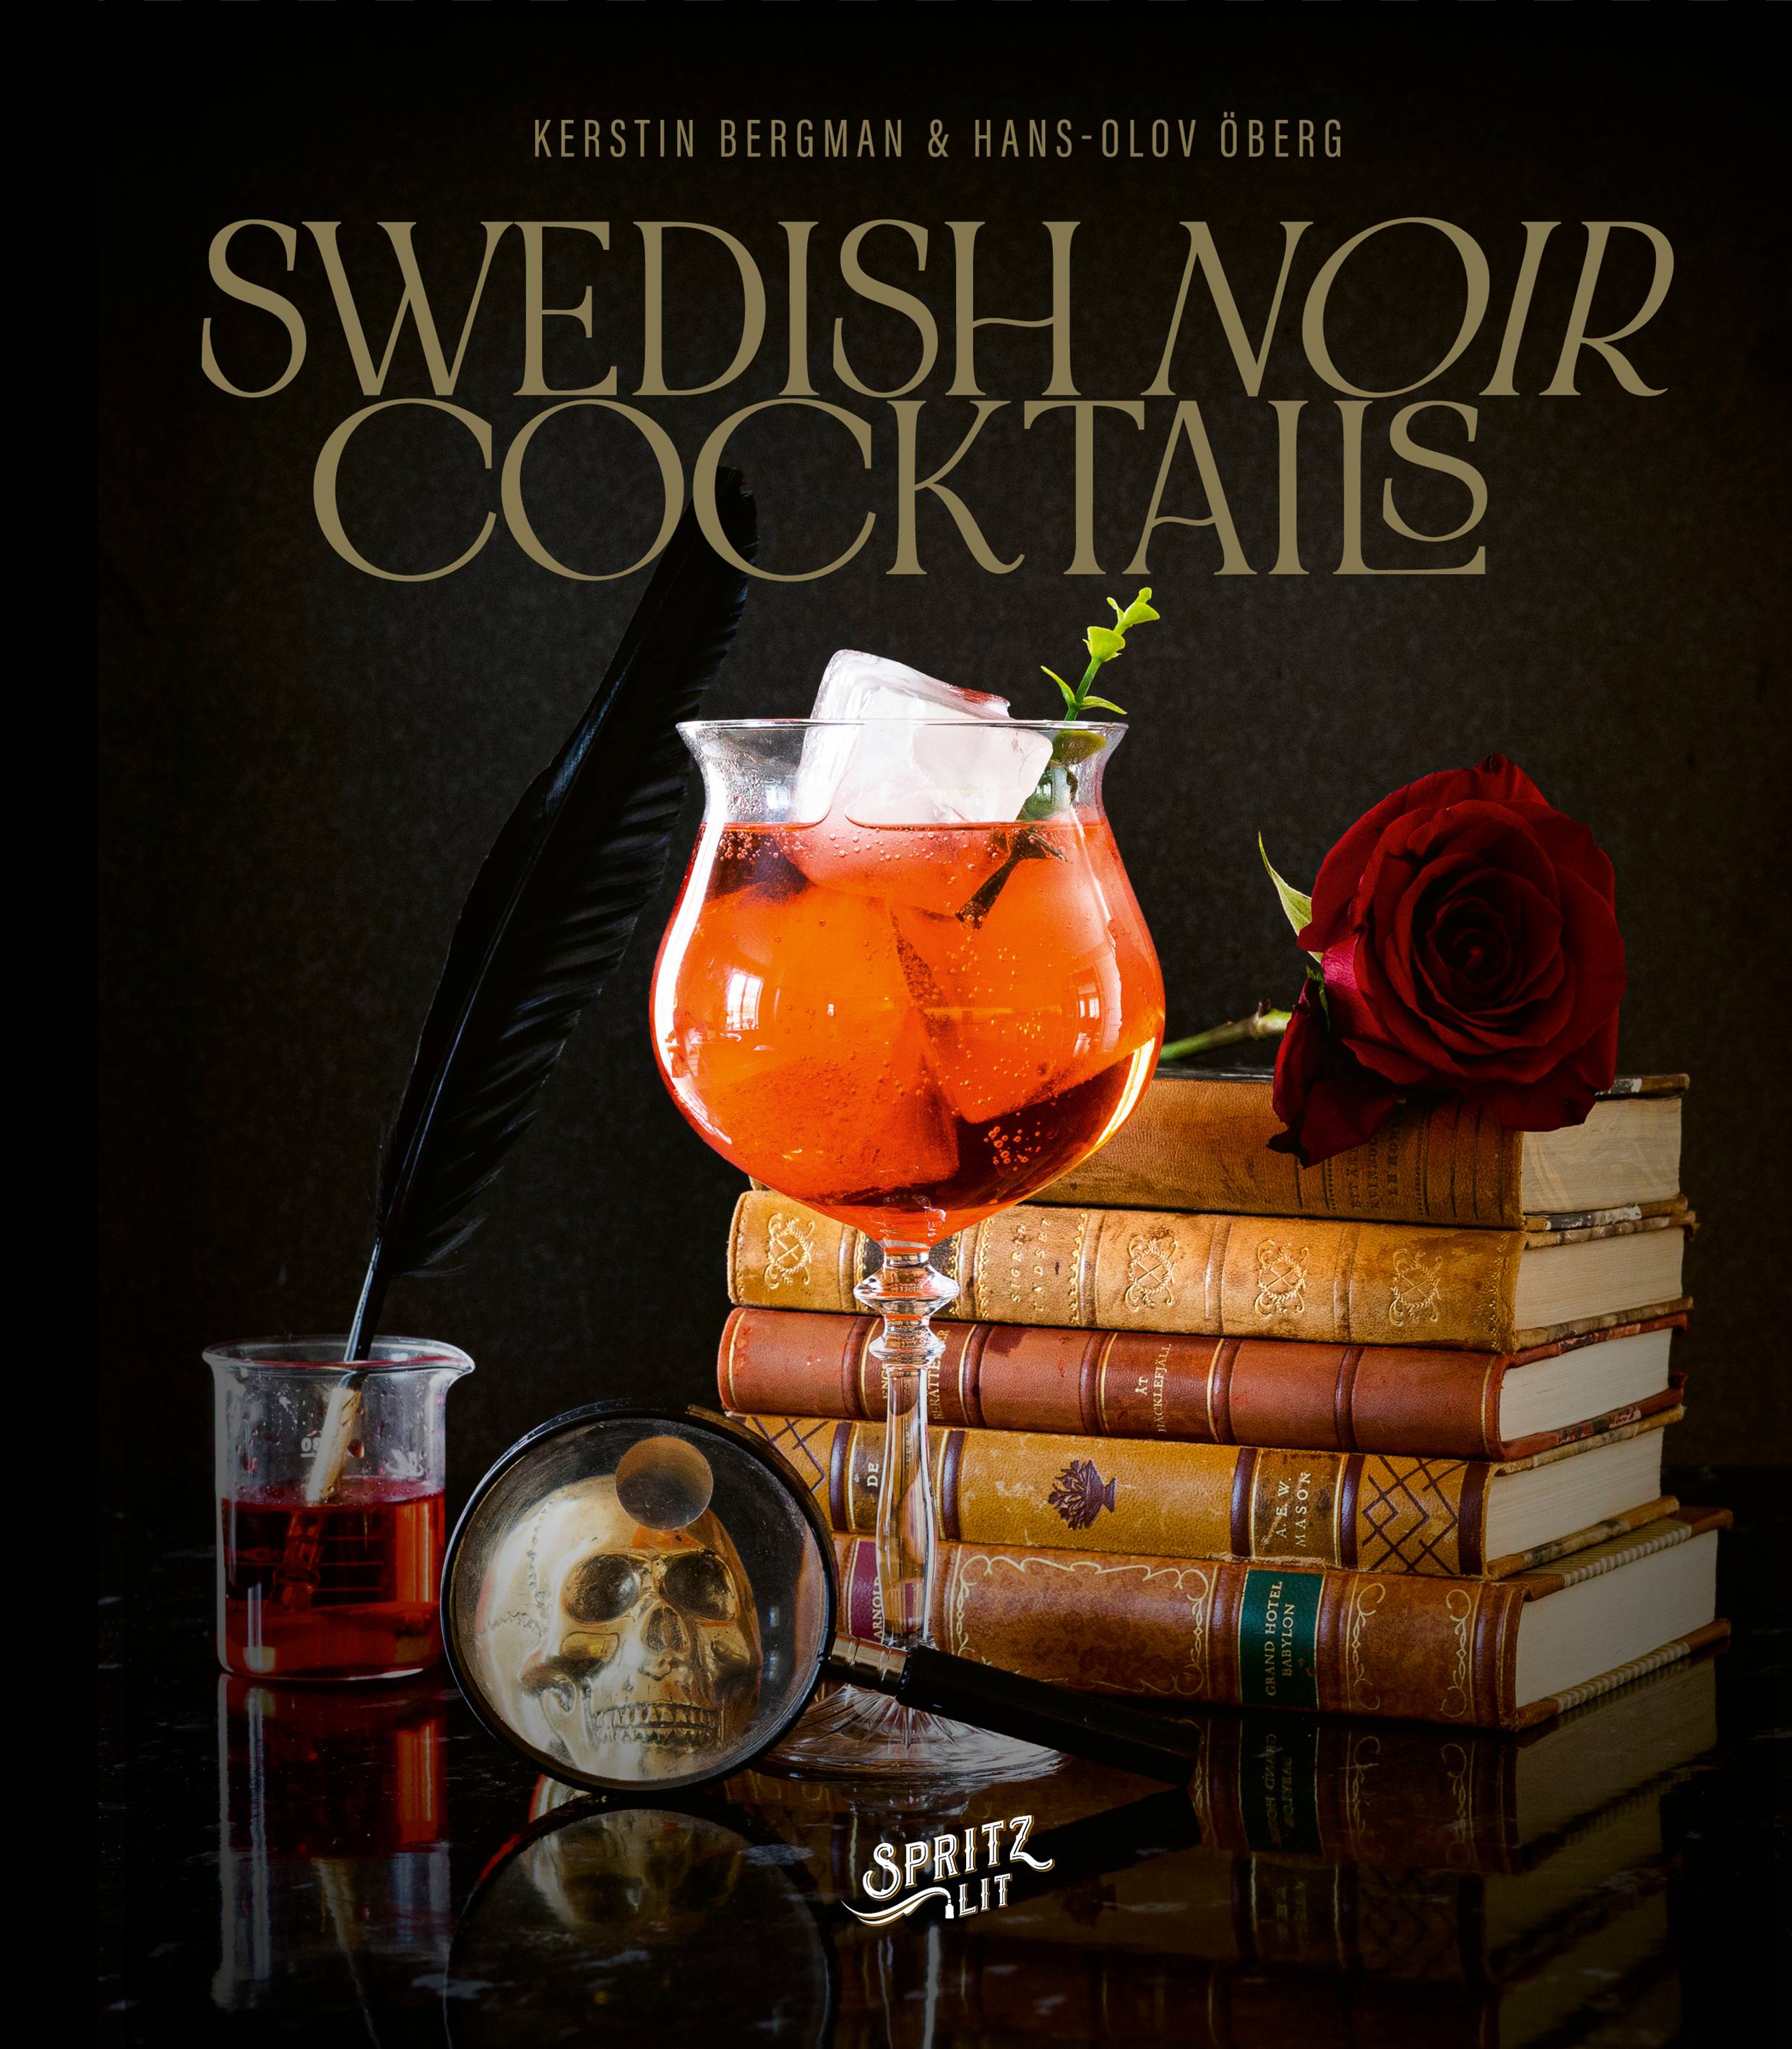 Swedish noir cocktails